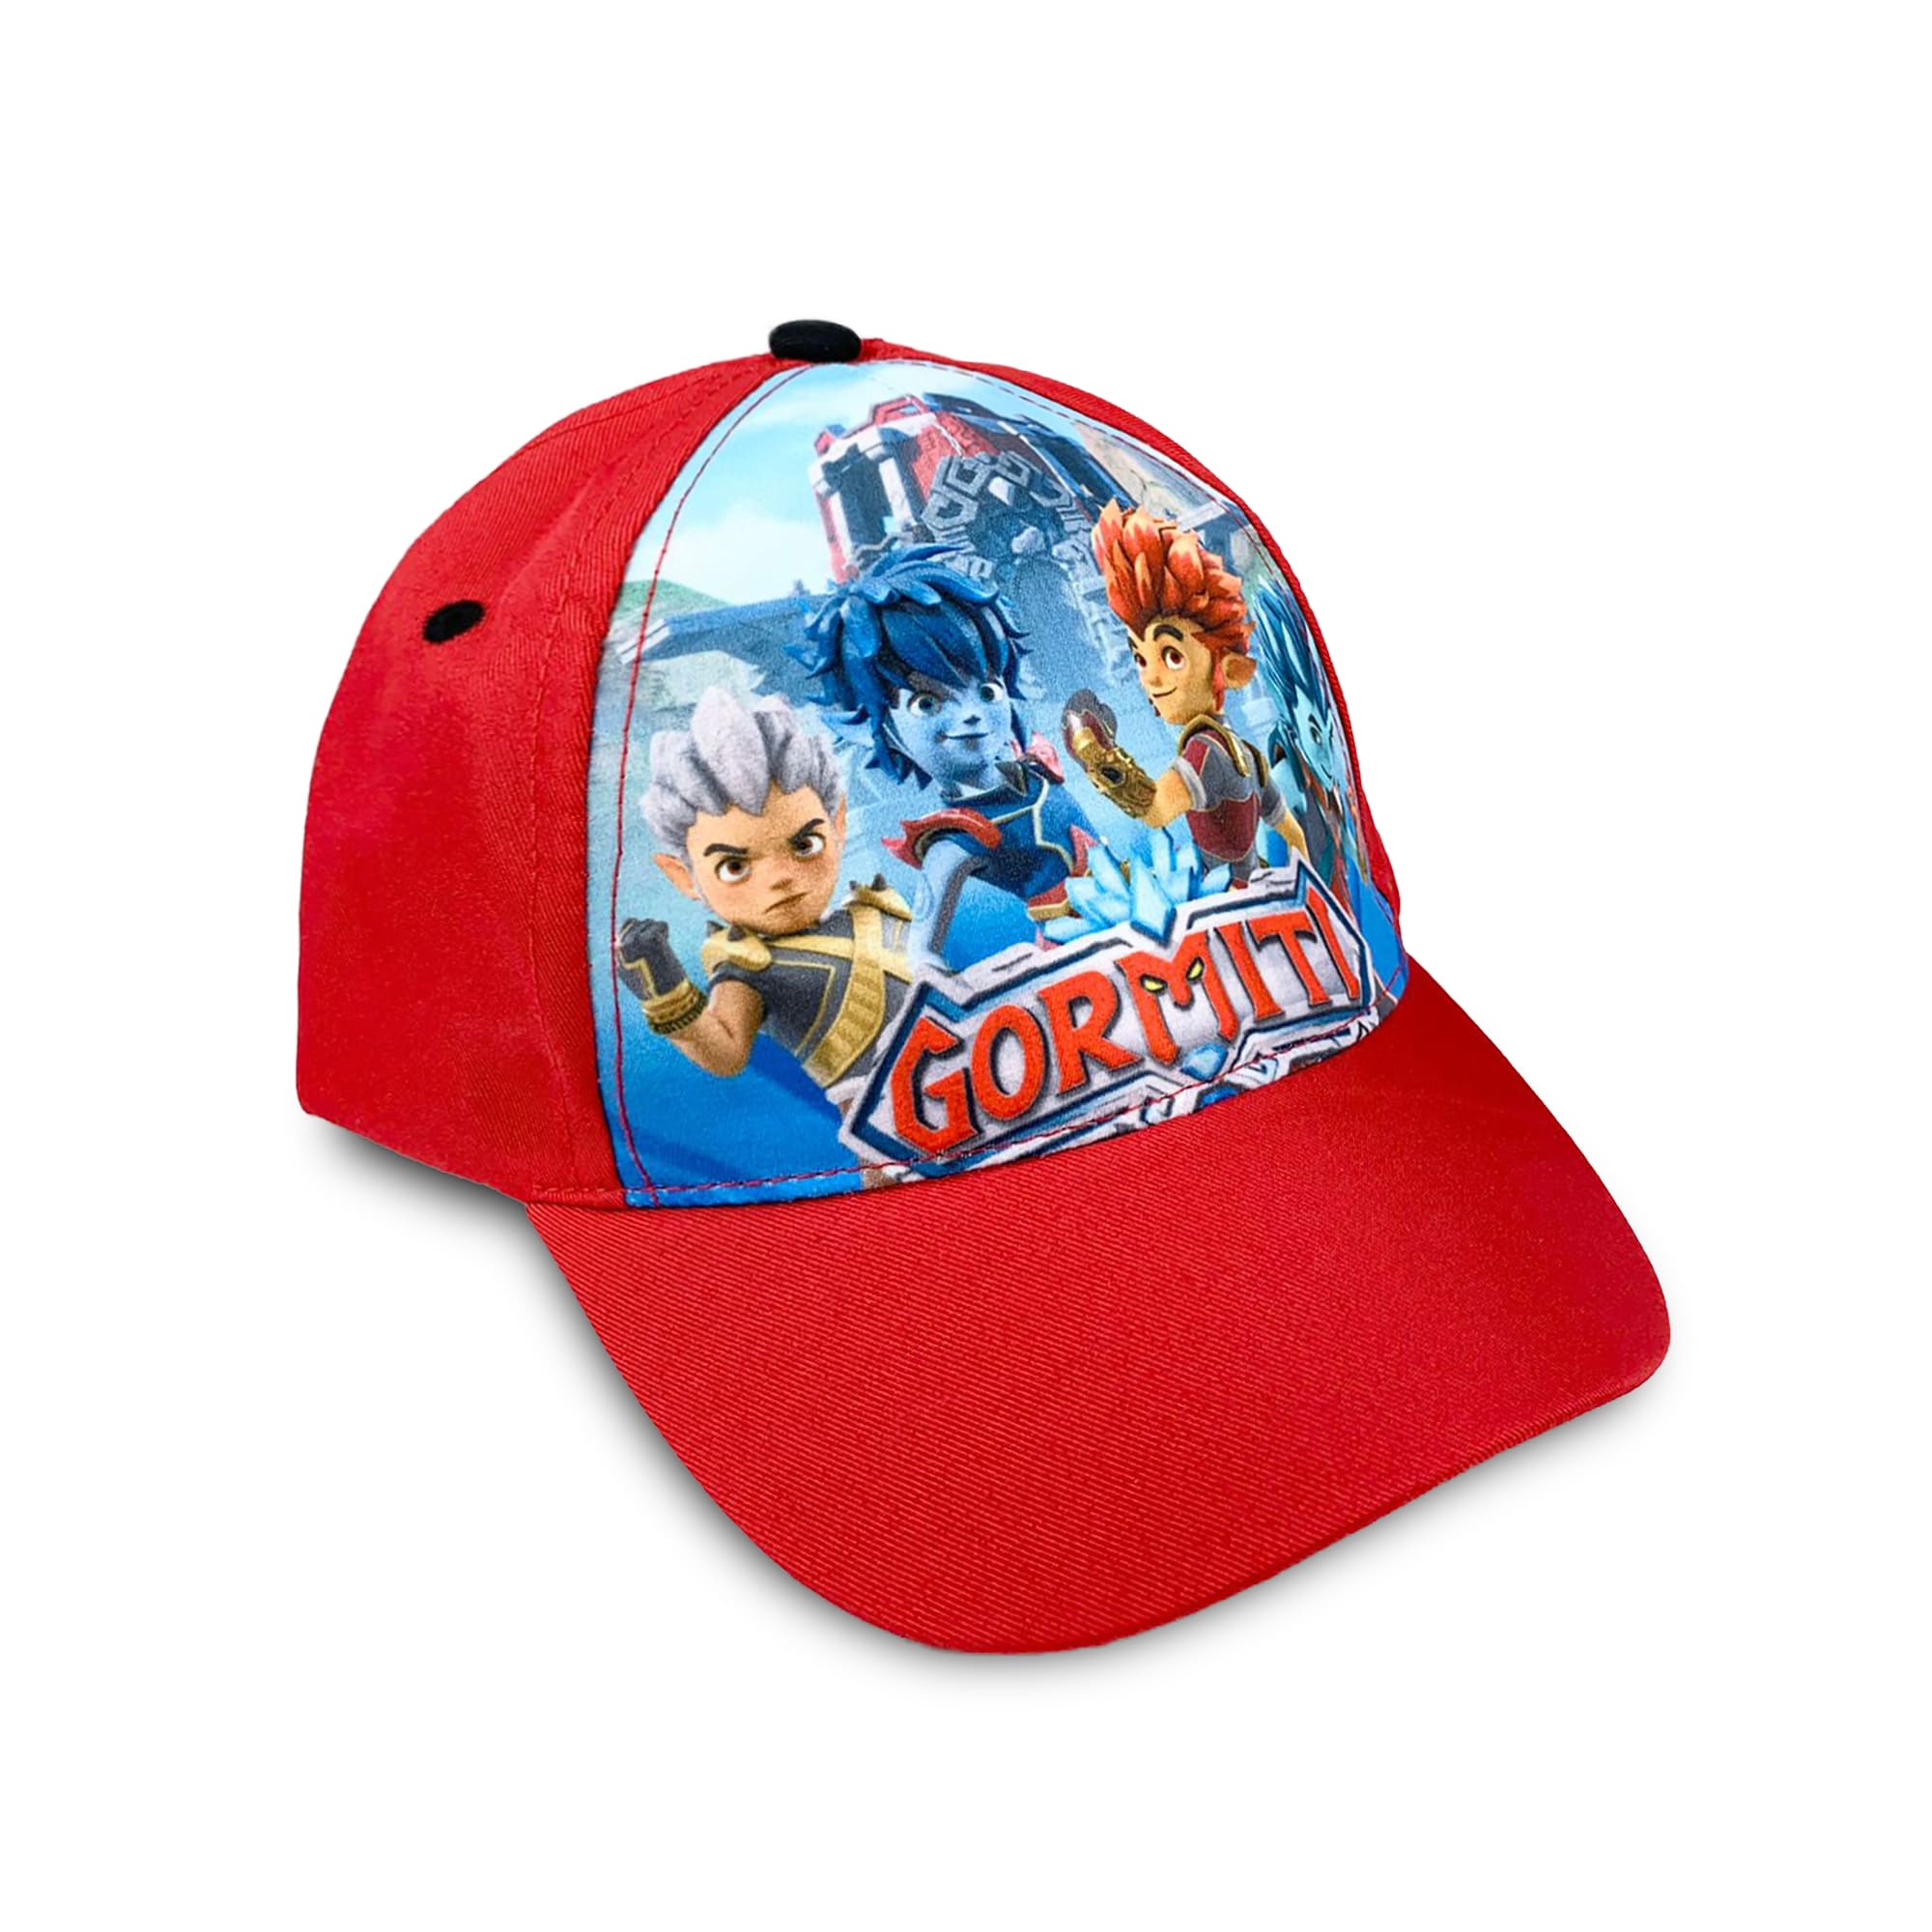 Cappellino per bambino ufficiale Gormiti berretto baseball con visiera 4196